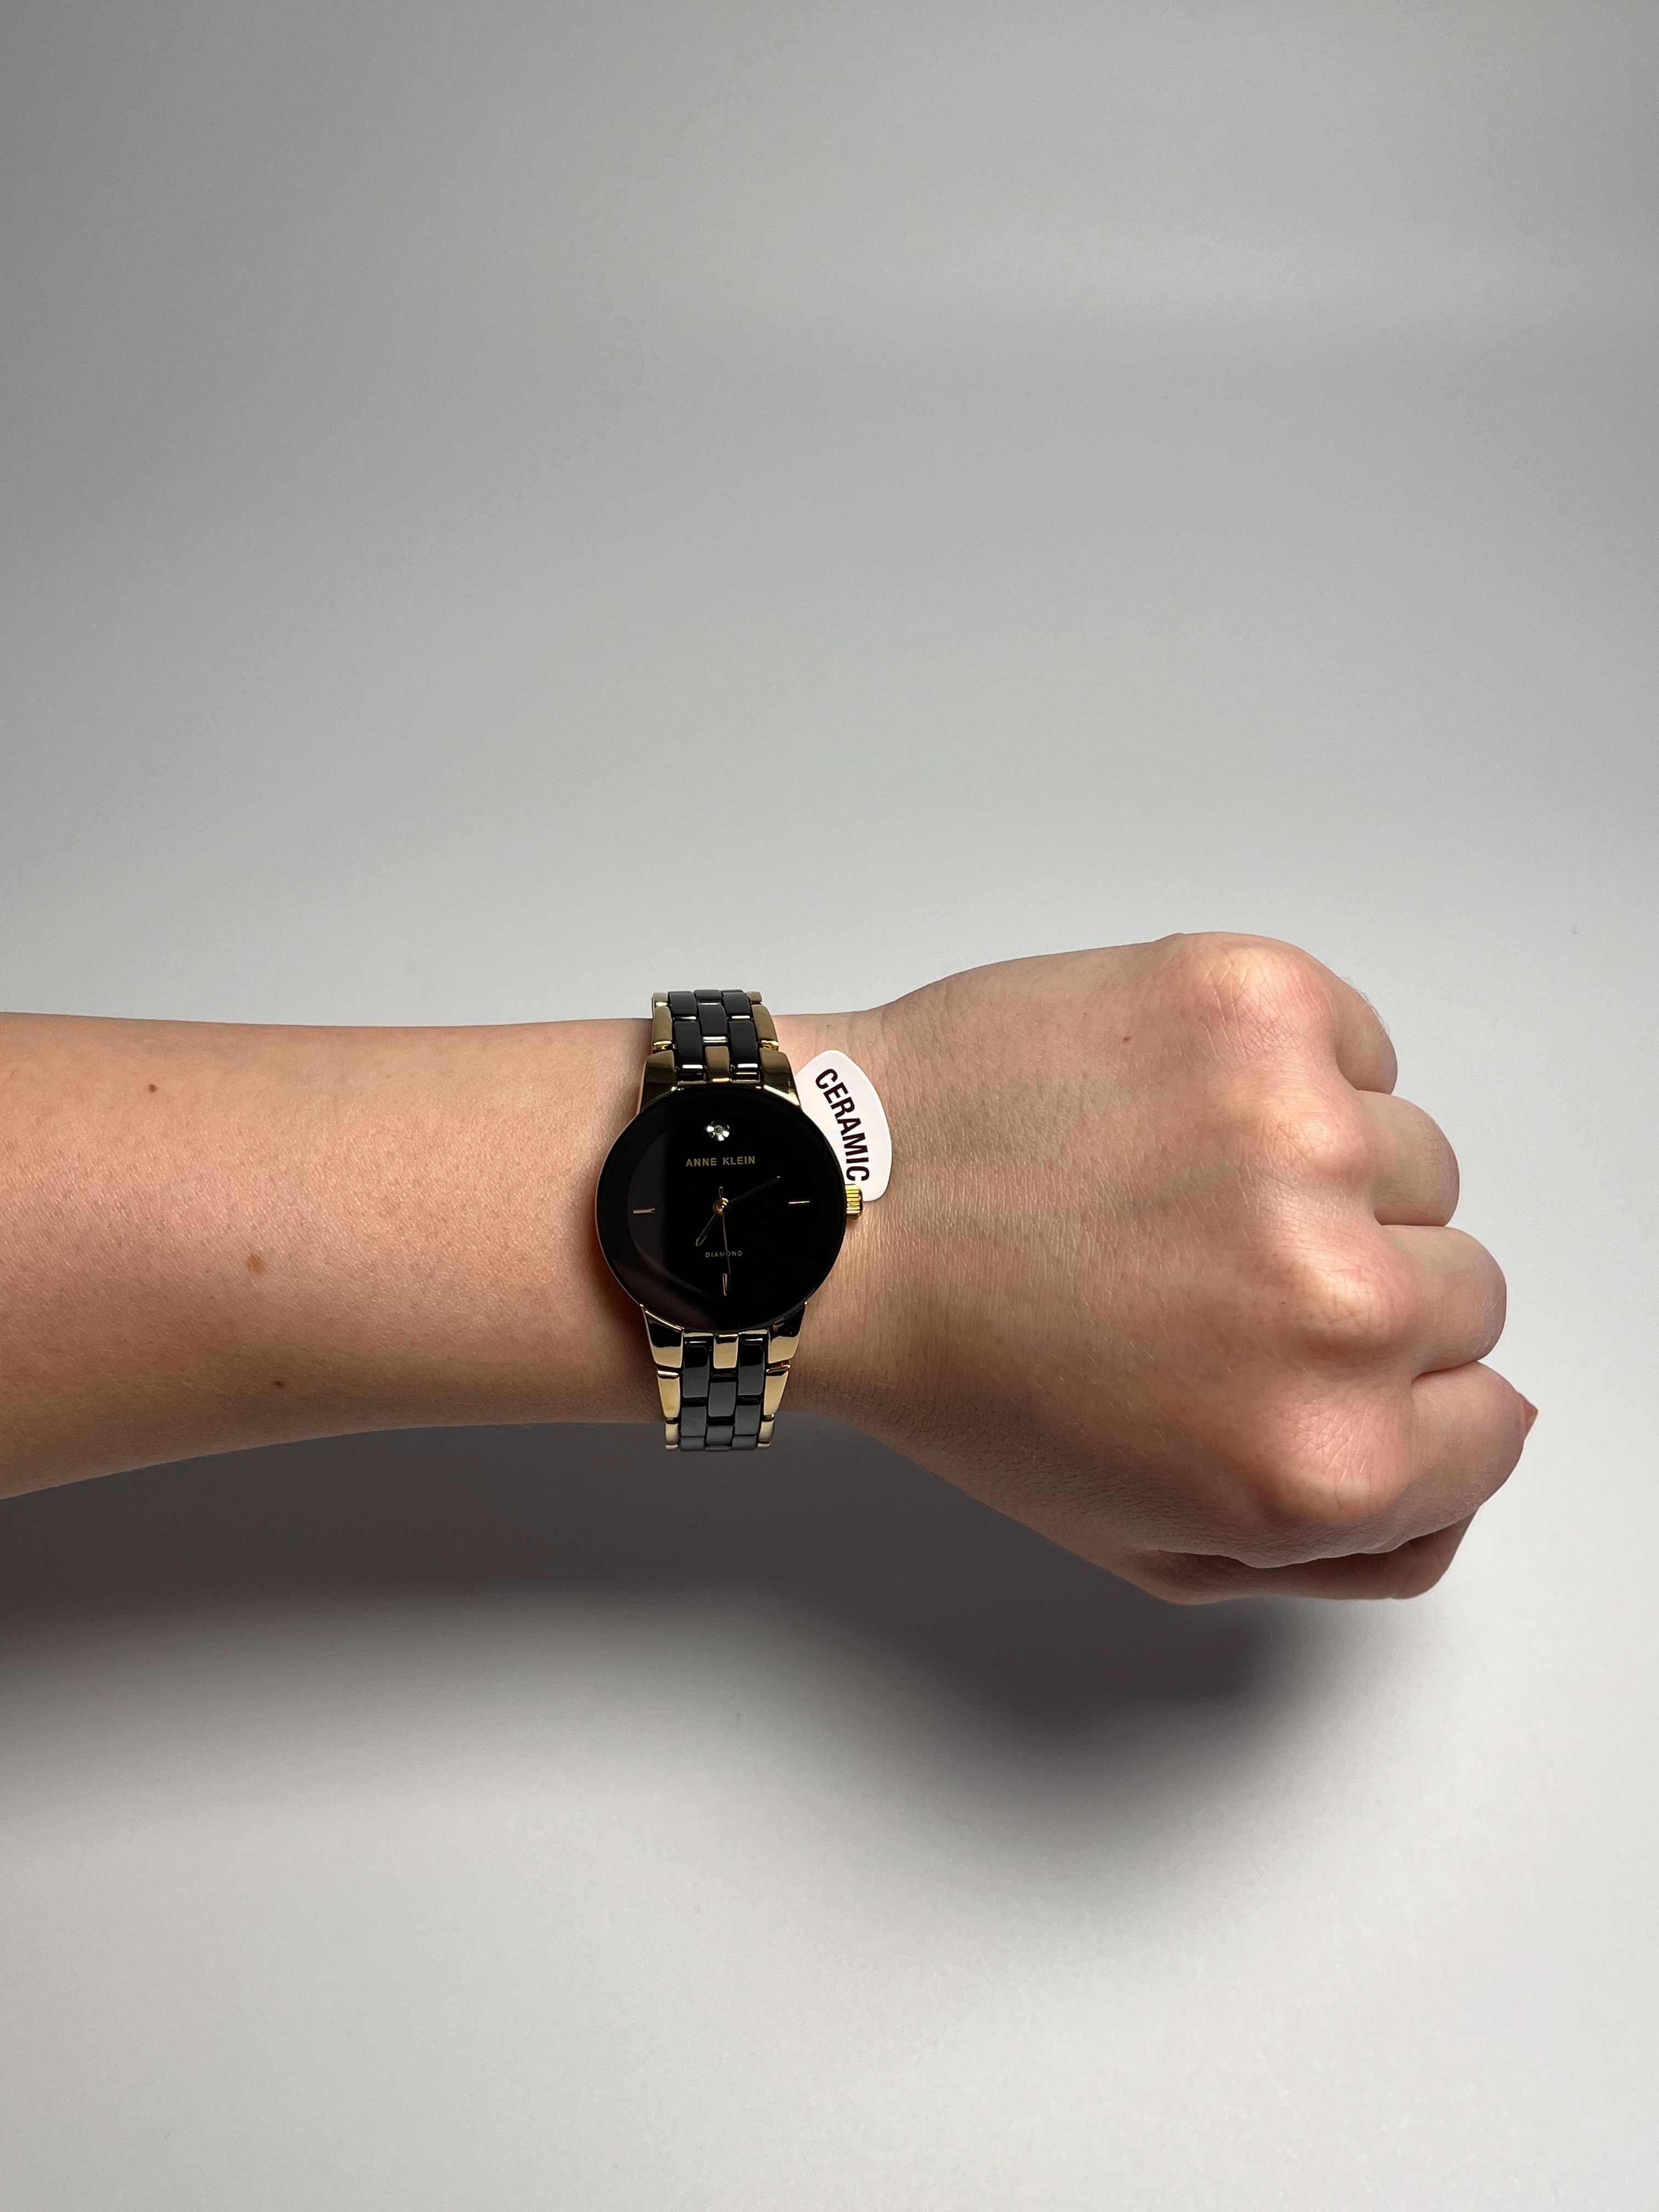 годинник Anne Klein AK/1610BKGB, часы черные анна кляйн, женские часы